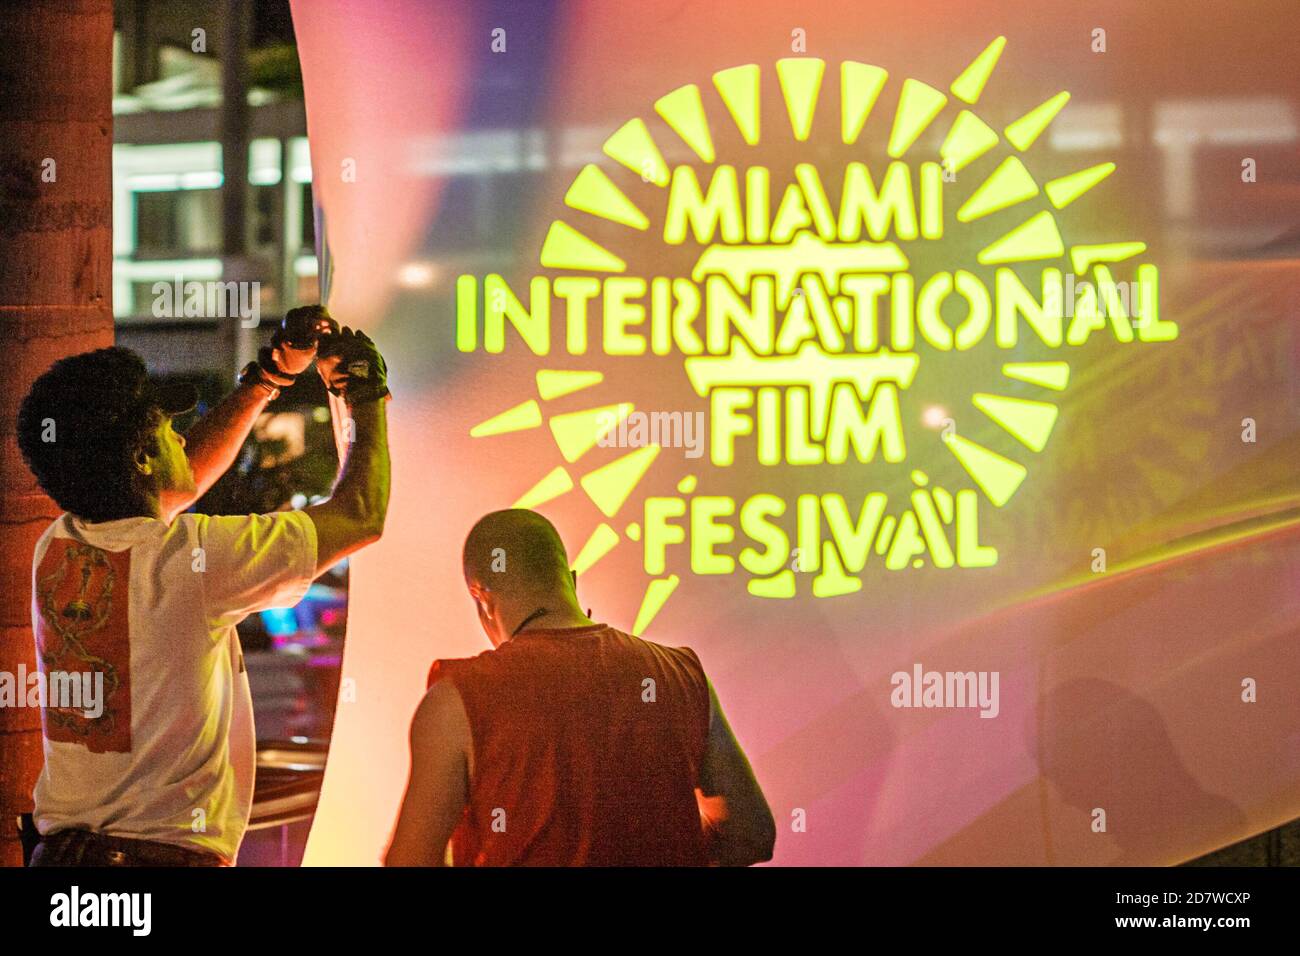 Miami Florida, logo du Festival international du film, bannière annuelle Banque D'Images